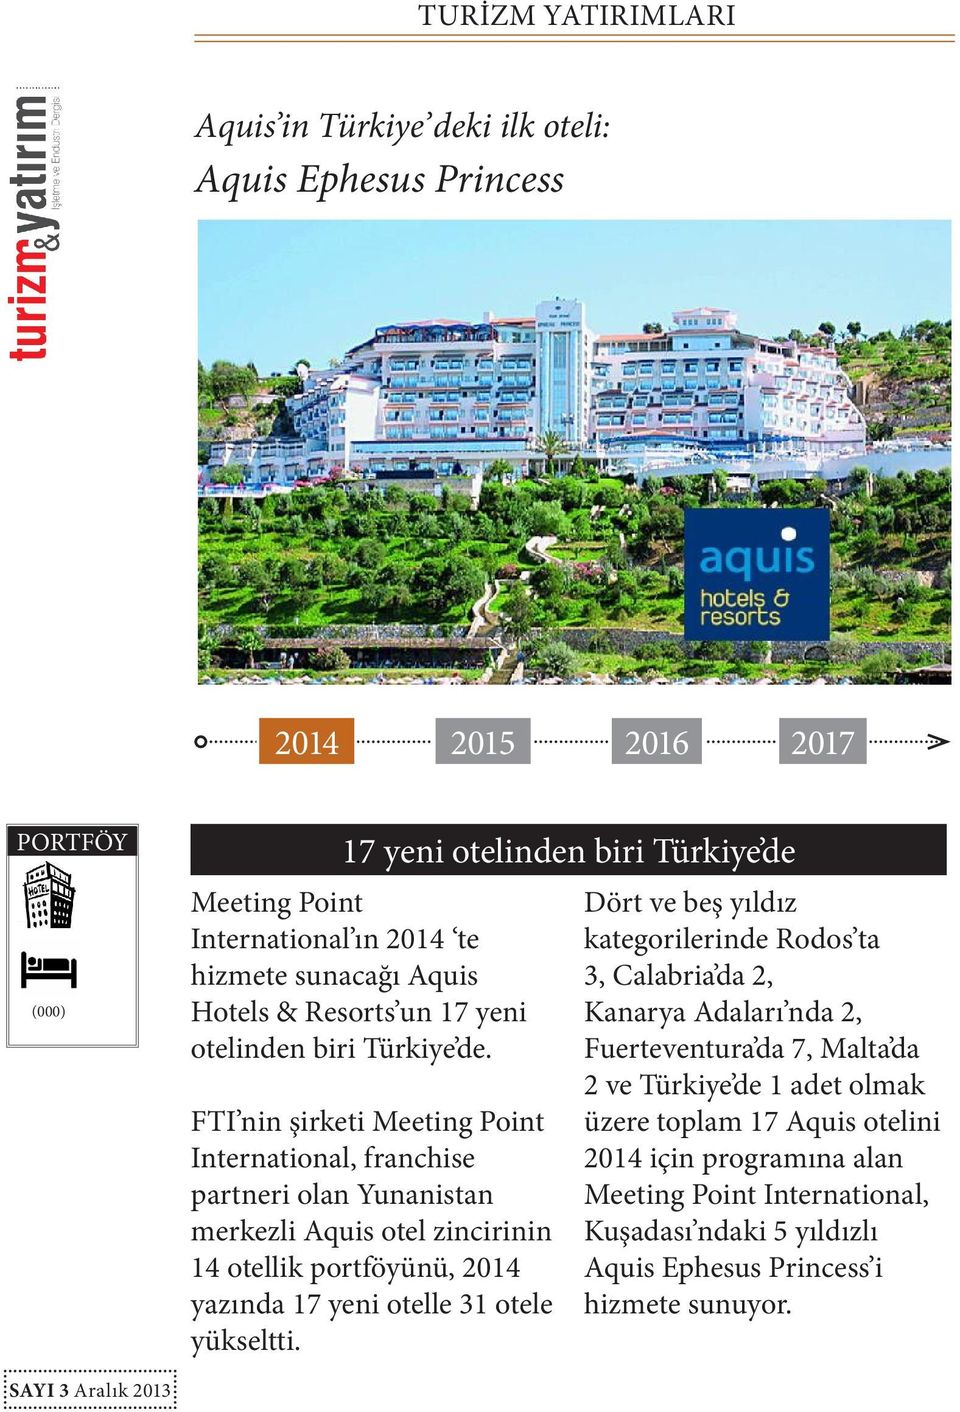 FTI nin şirketi Meeting Point International, franchise partneri olan Yunanistan merkezli Aquis otel zincirinin 14 otellik portföyünü, yazında 17 yeni otelle 31 otele